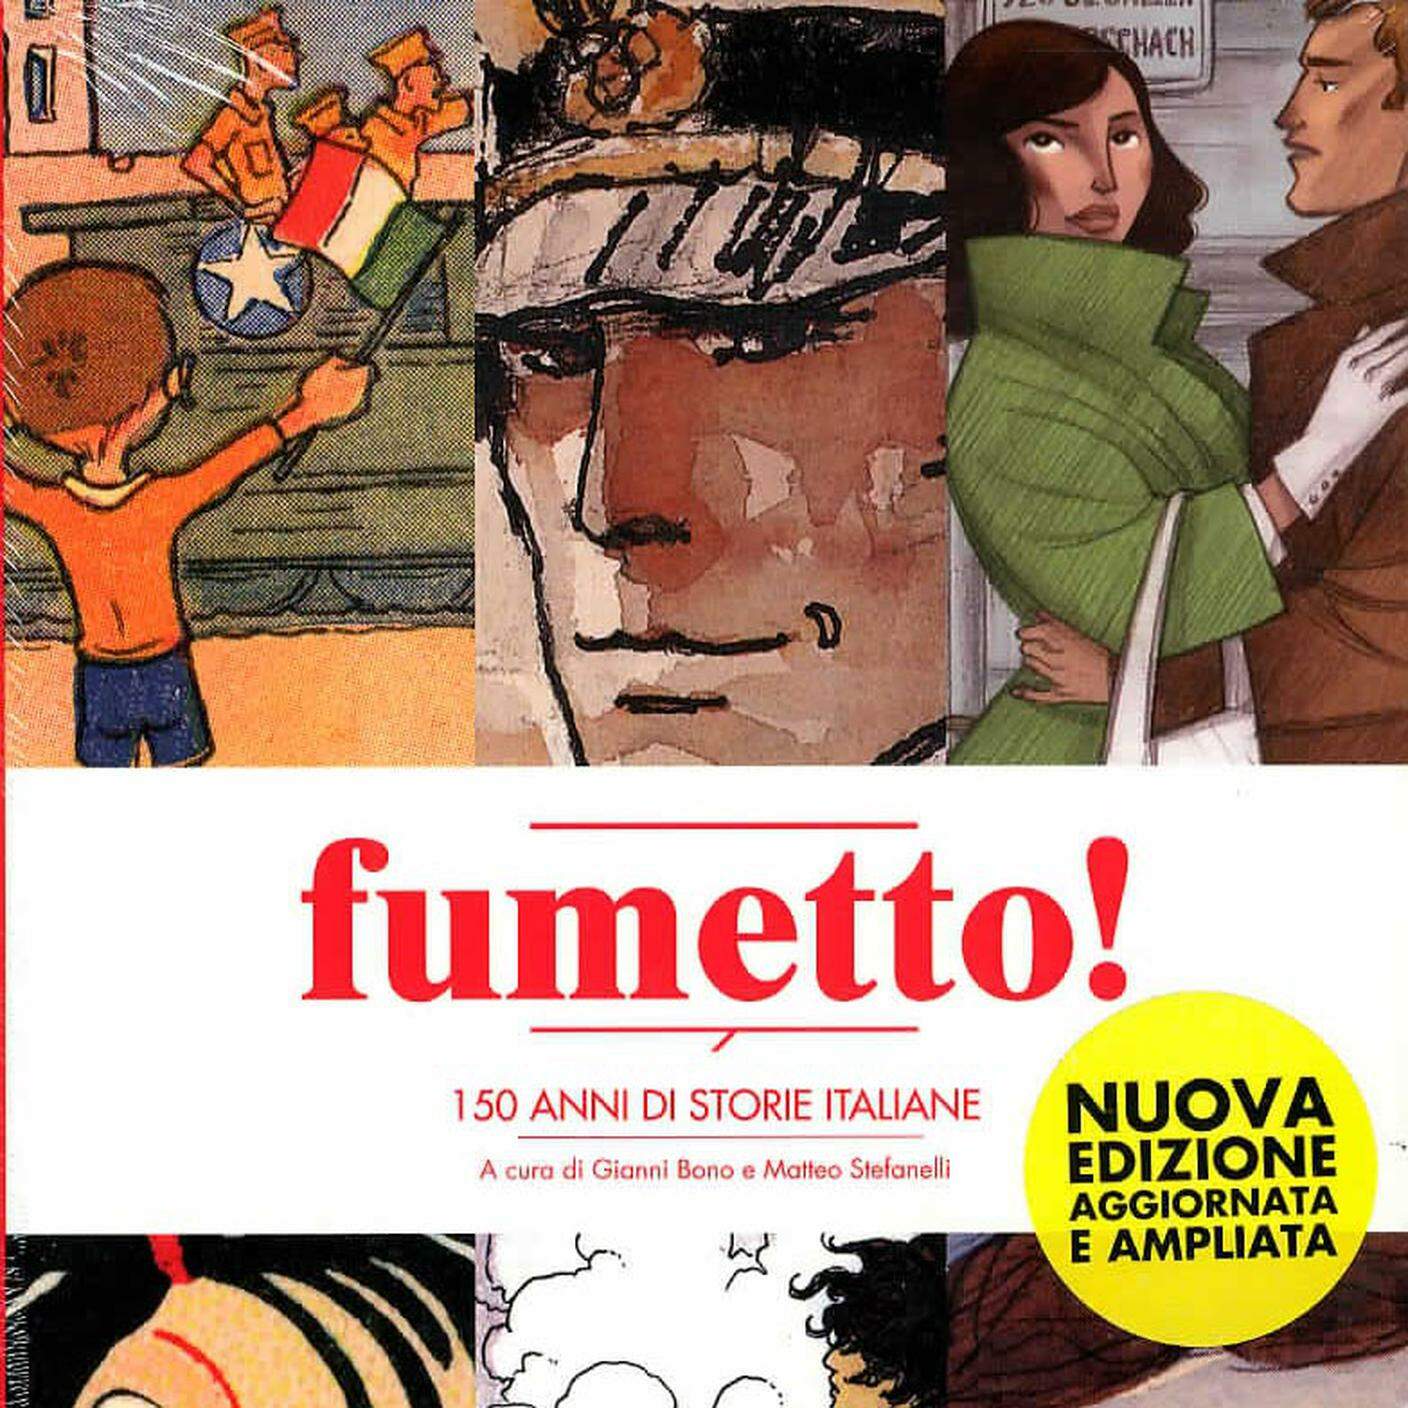 "Fumetto! 150 anni di storie italiane" Matteo Stefanelli, Rizzoli (dettaglio copertina)